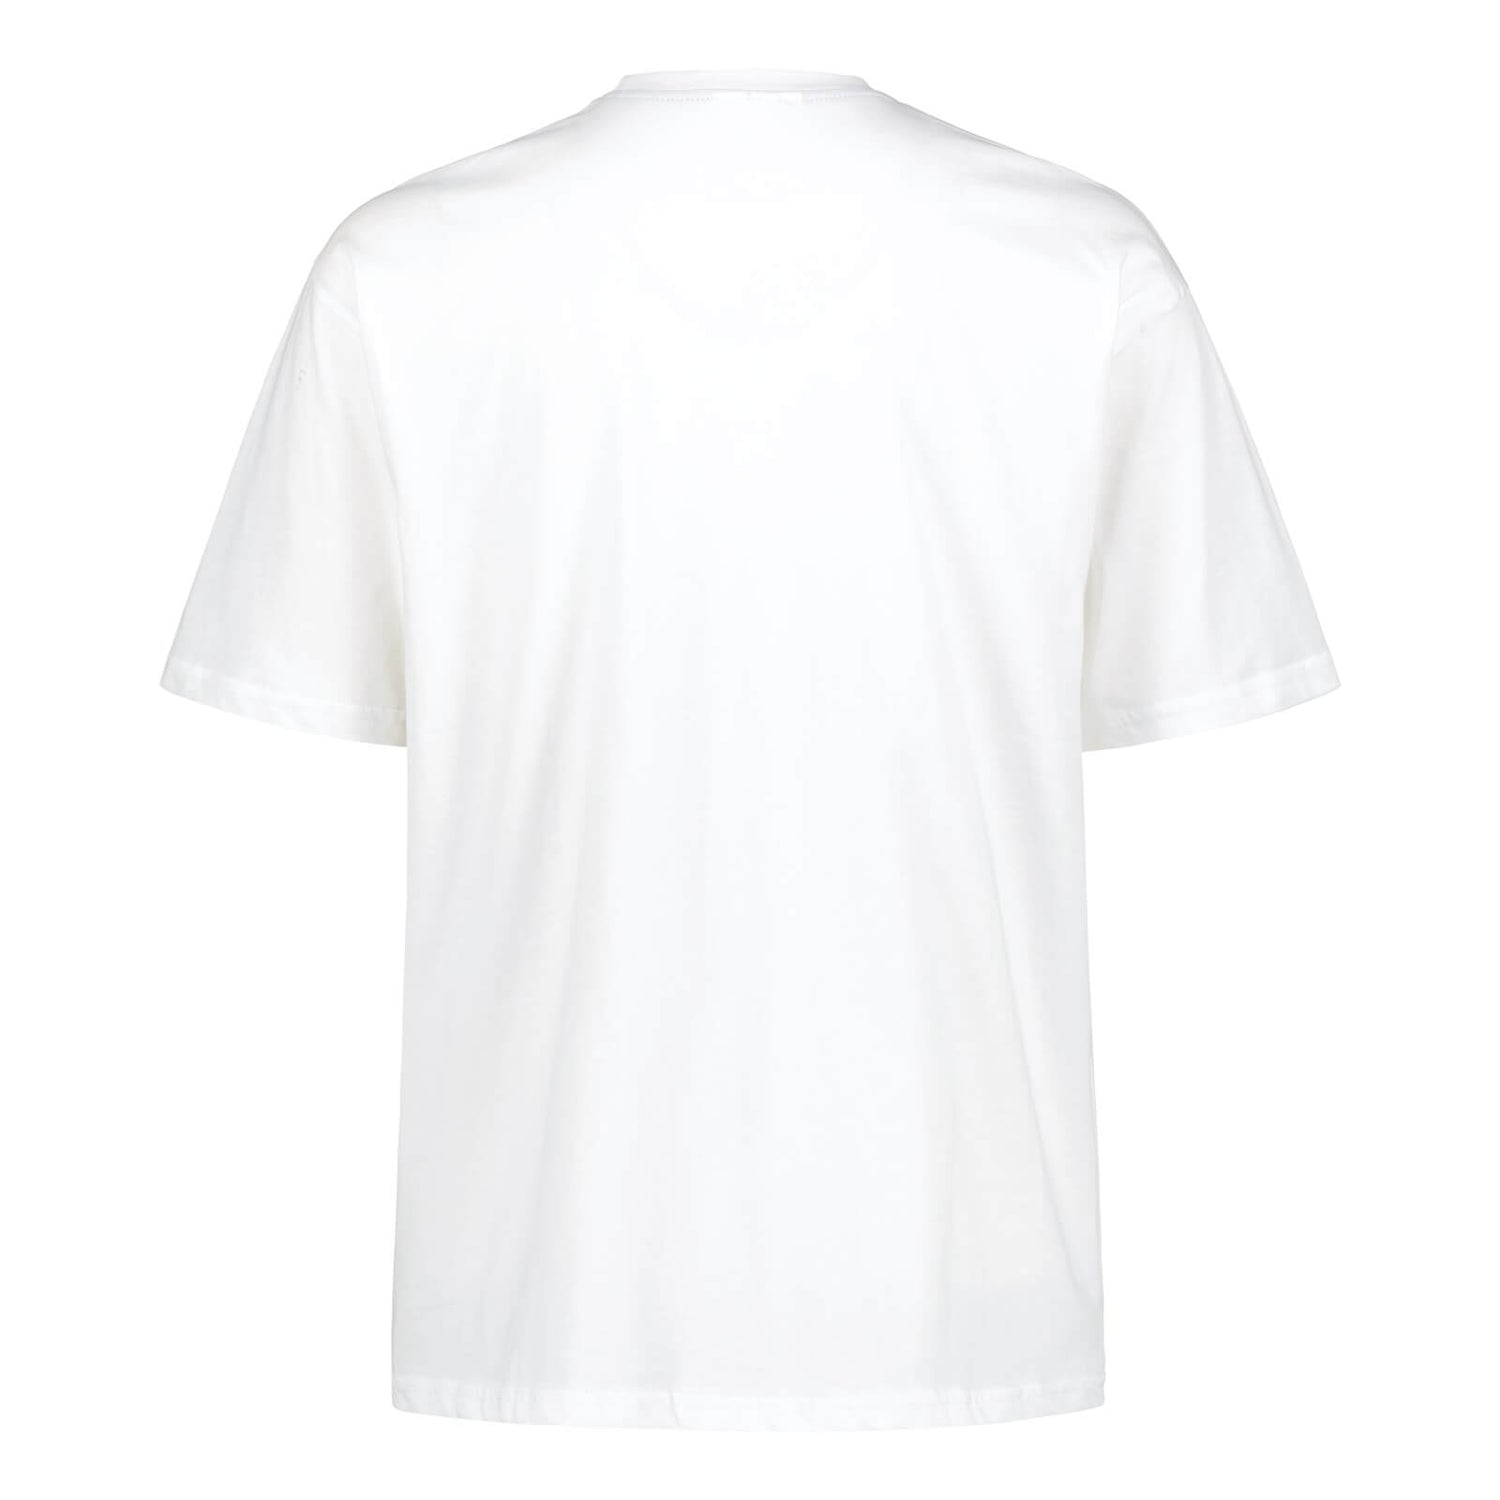 National Team Cotton Fan Shirt